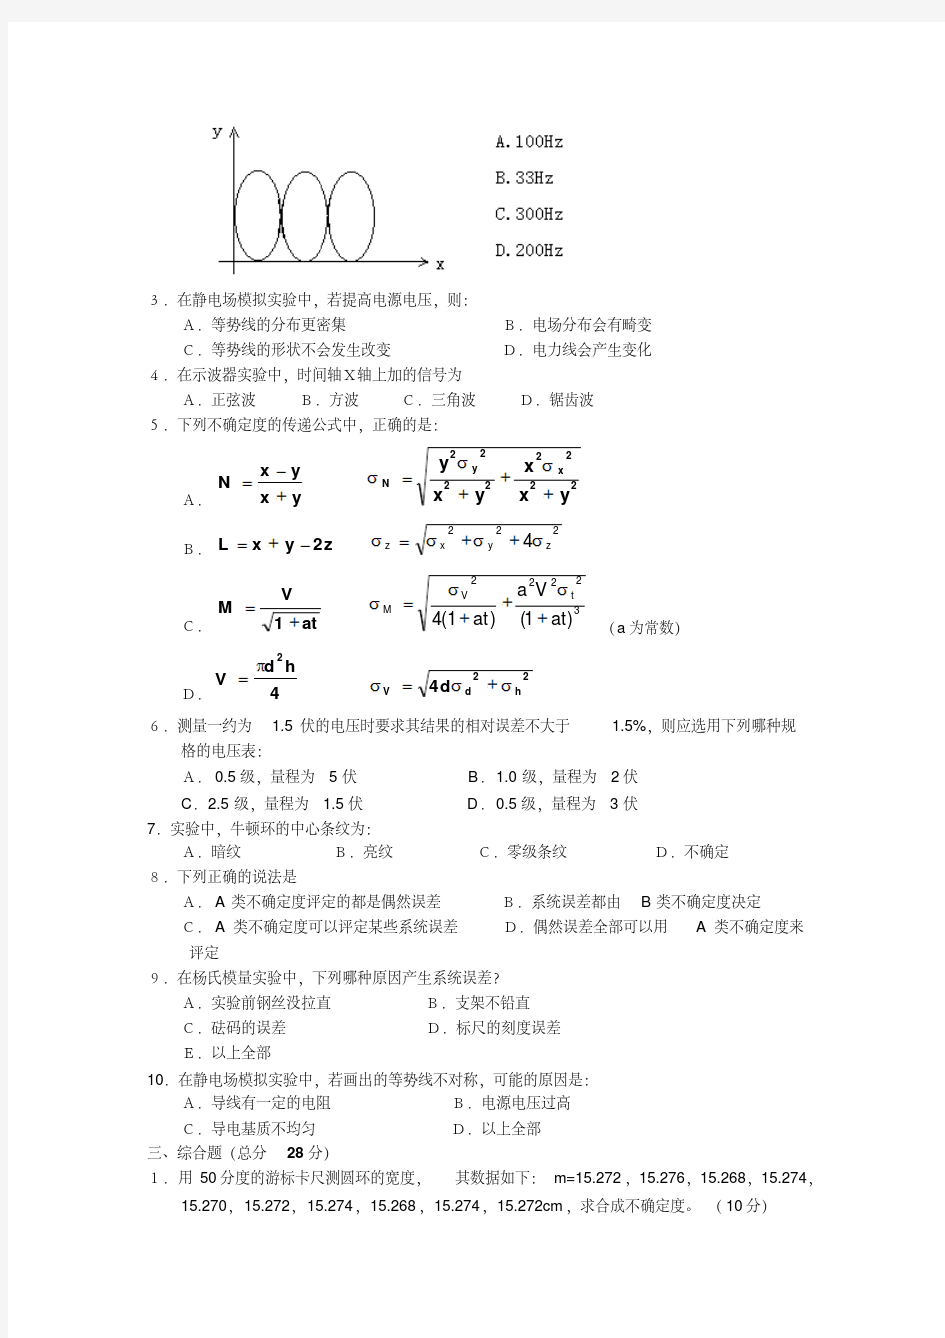 北京邮电大学大学物理实验习题1